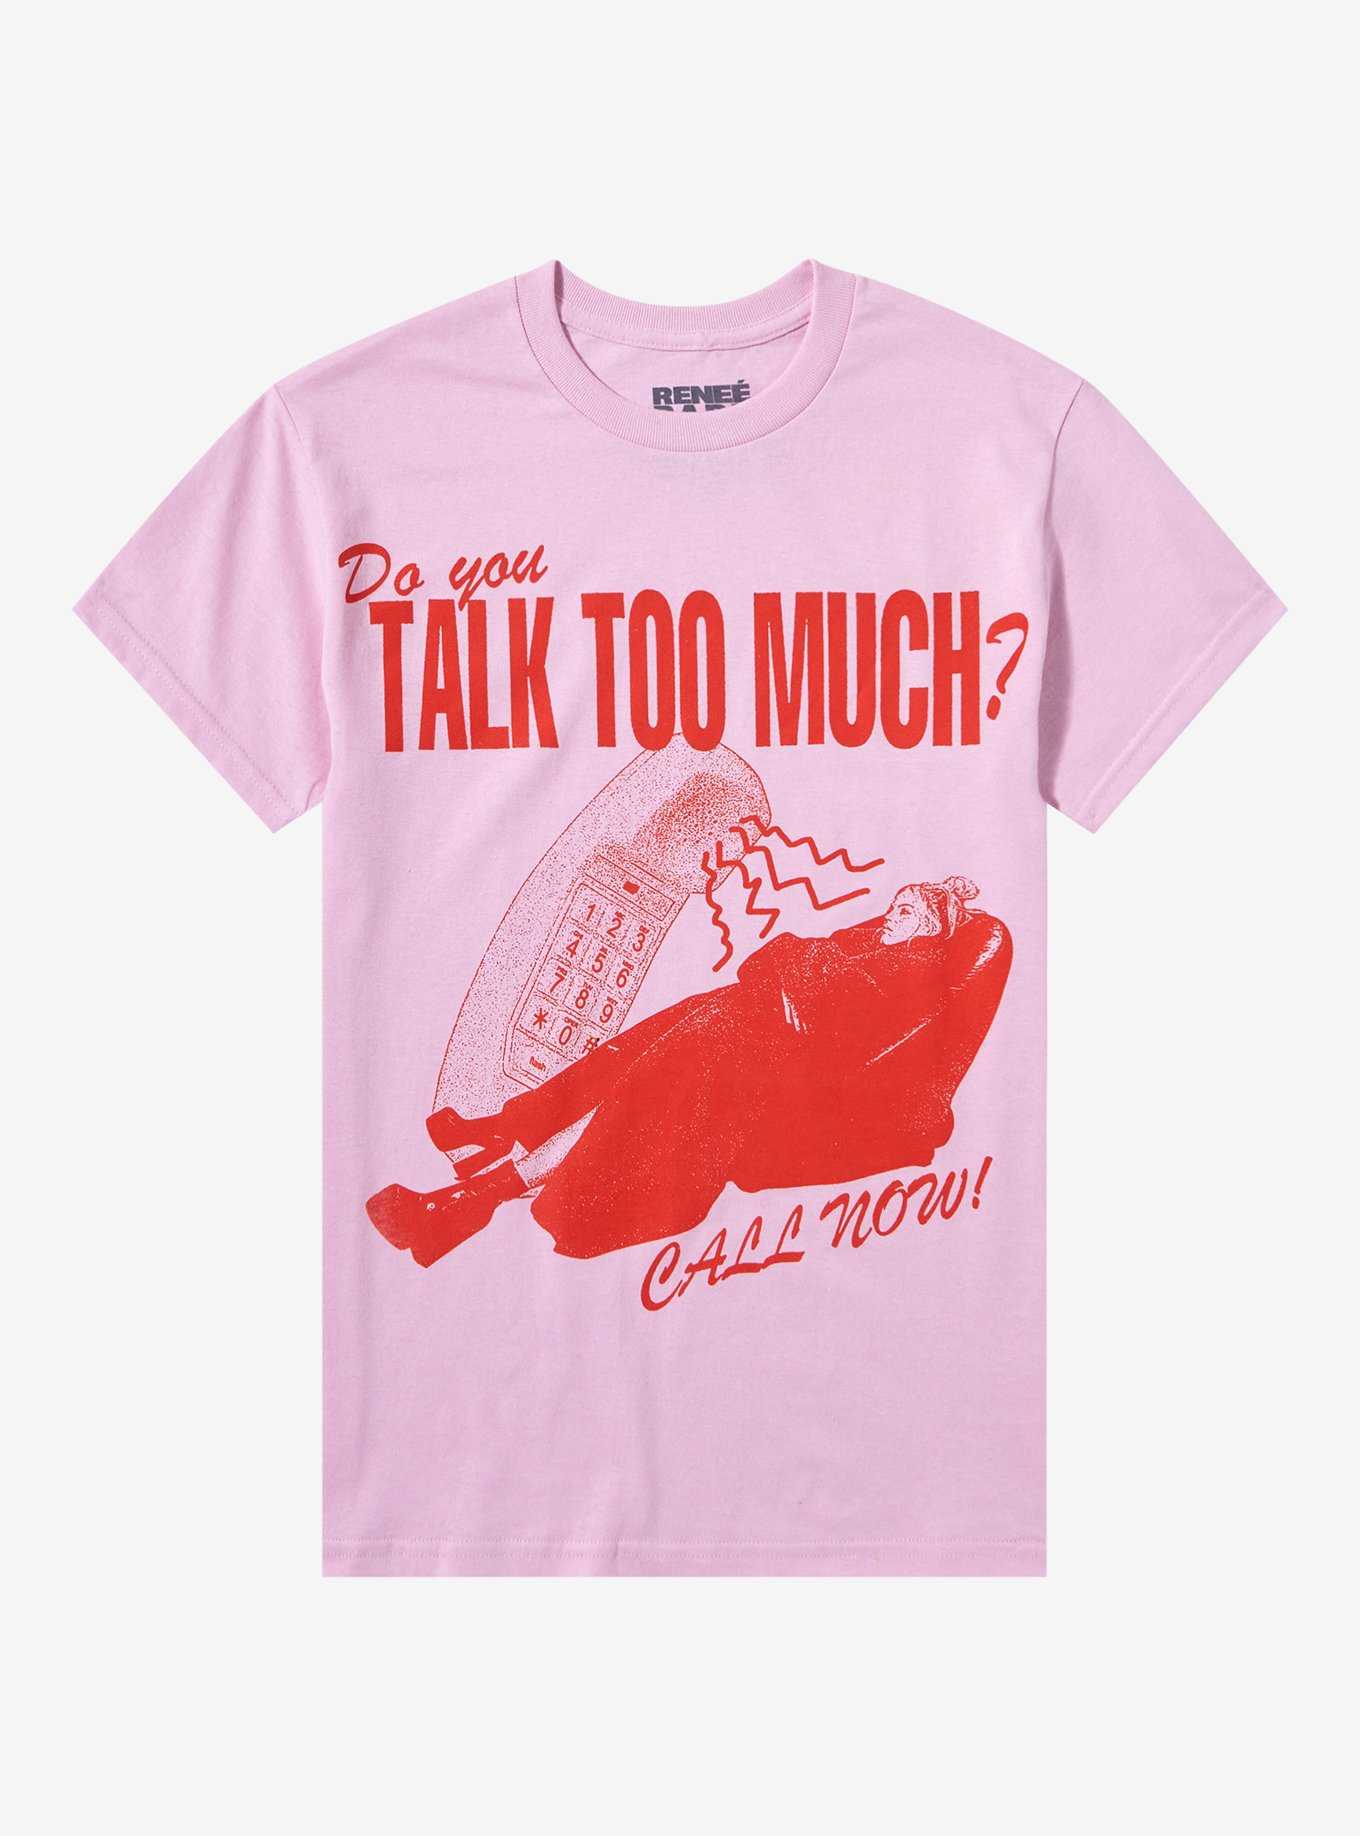 Renee Rapp Talk Too Much Boyfriend Fit Girls T-Shirt, , hi-res